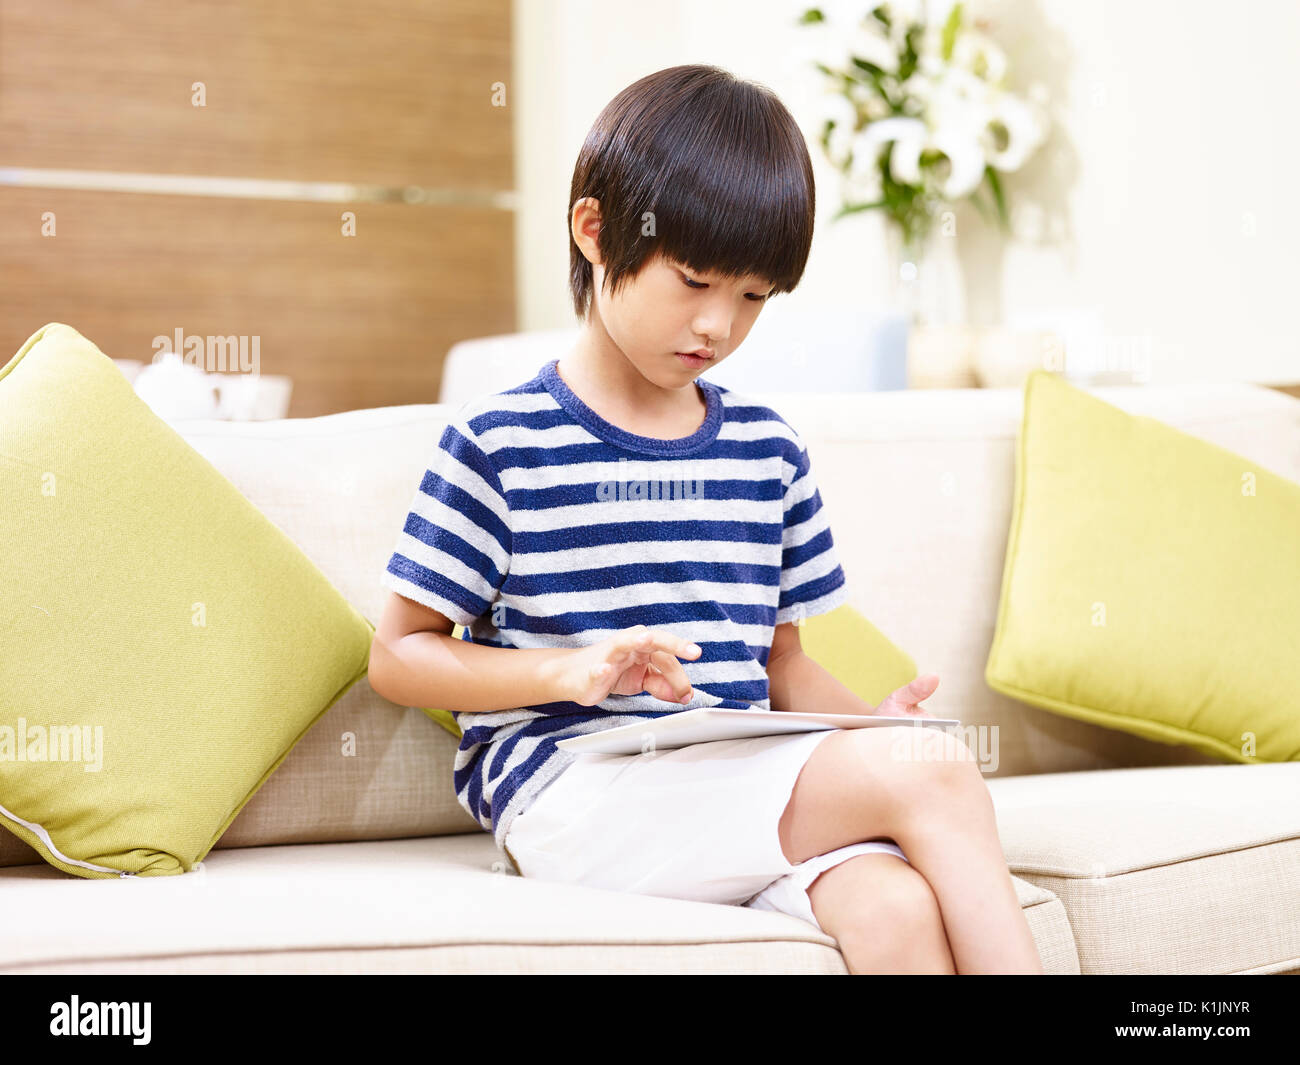 Enfant asiatique assis seul sur le jeu de table with digital tablet Banque D'Images